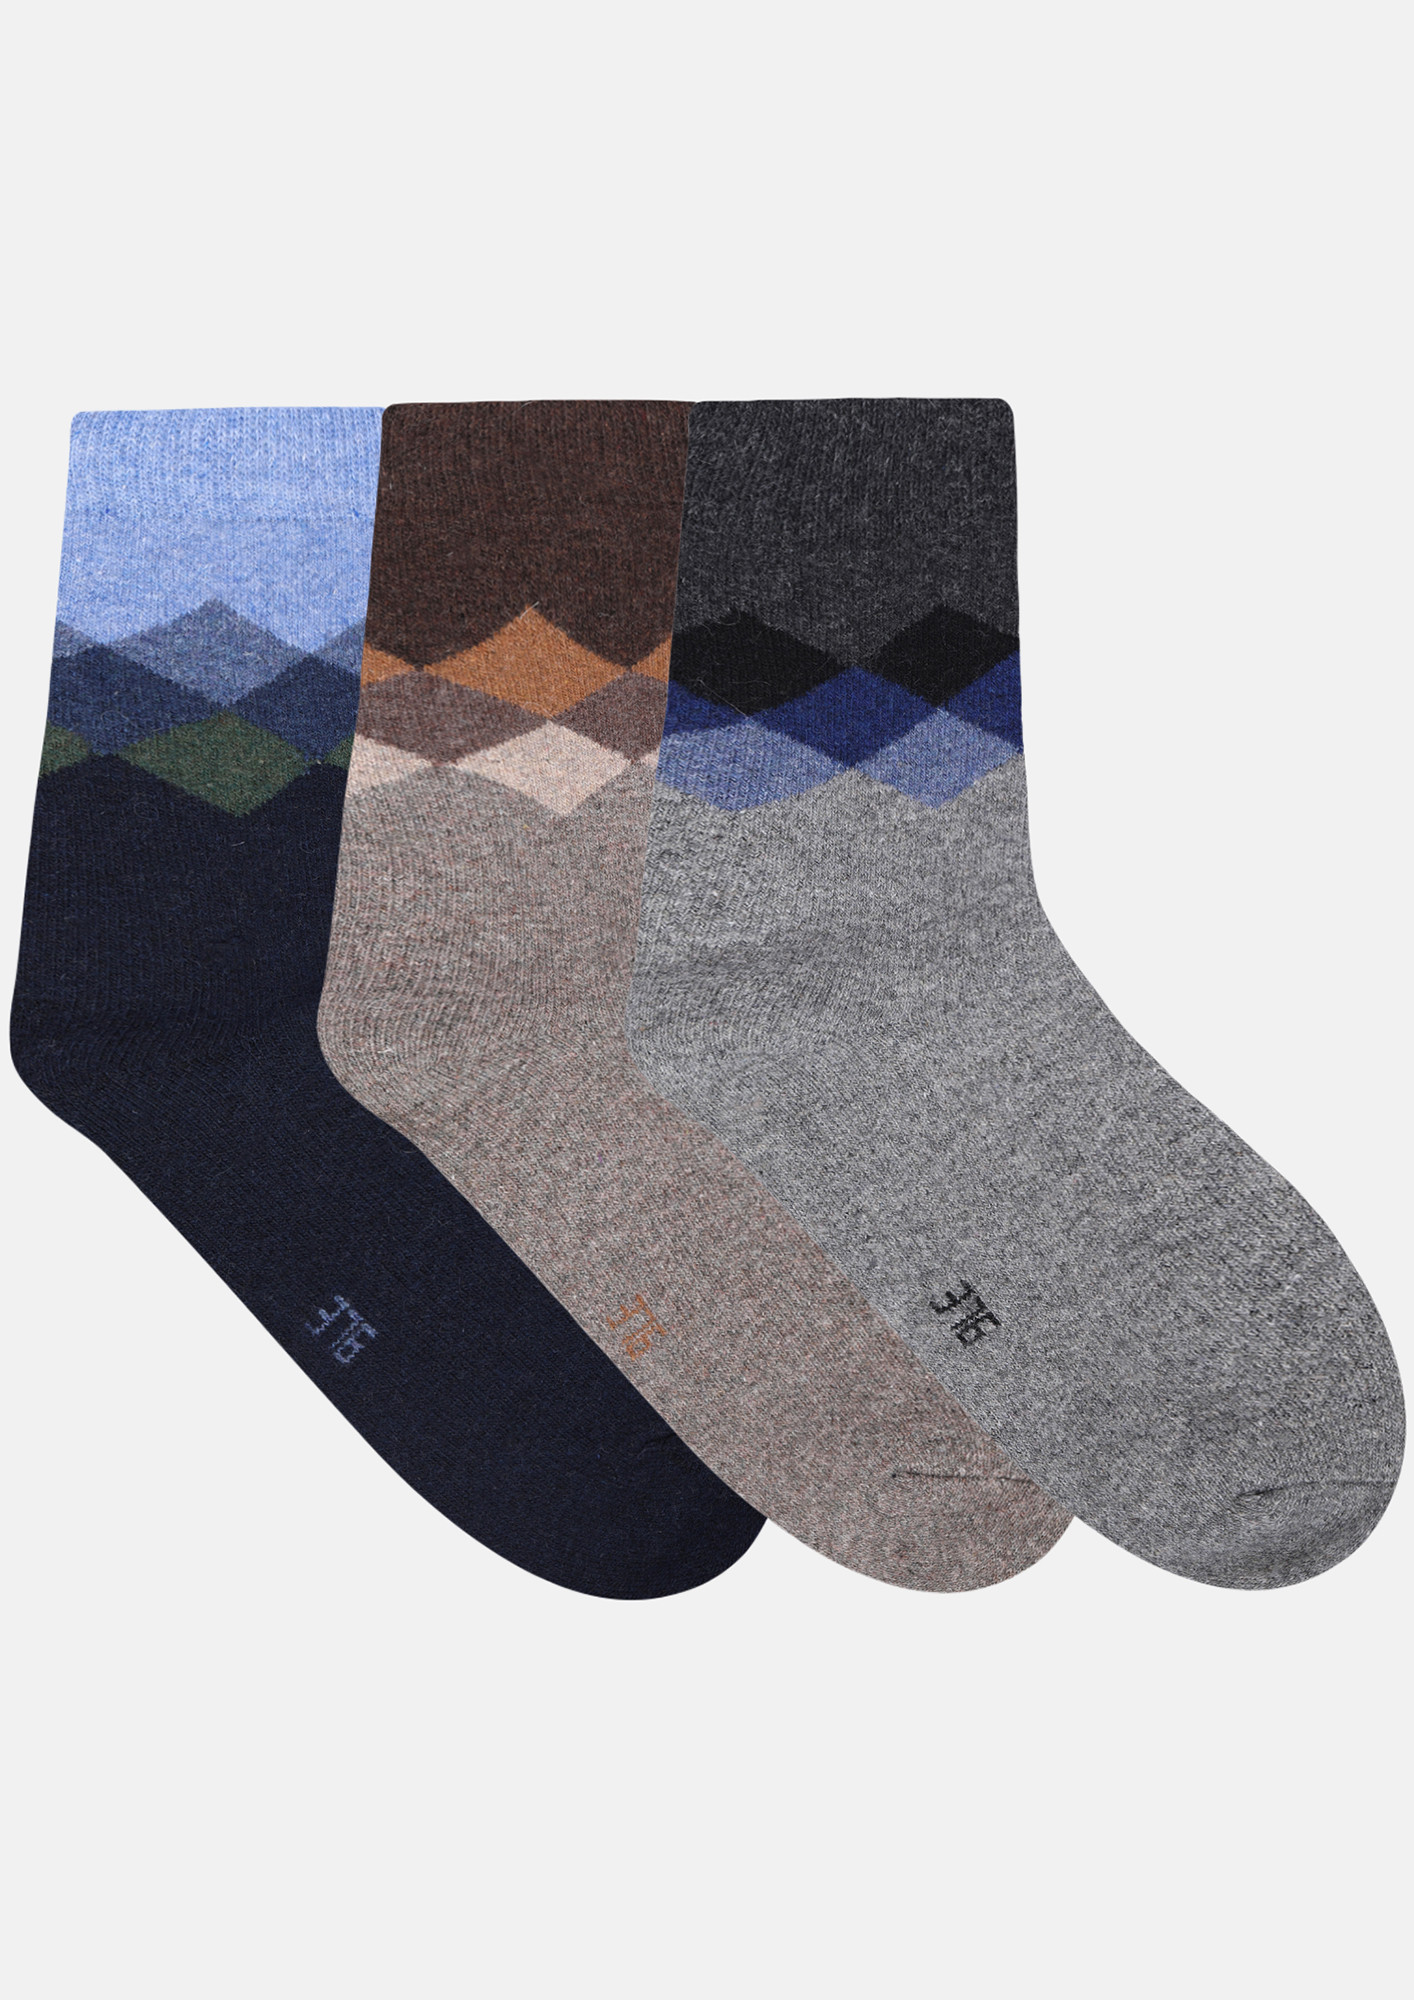 NEXT2SKIN Men's Woollen Regular length Socks (Pack of 3) (Blue,Brown,Dark Grey)